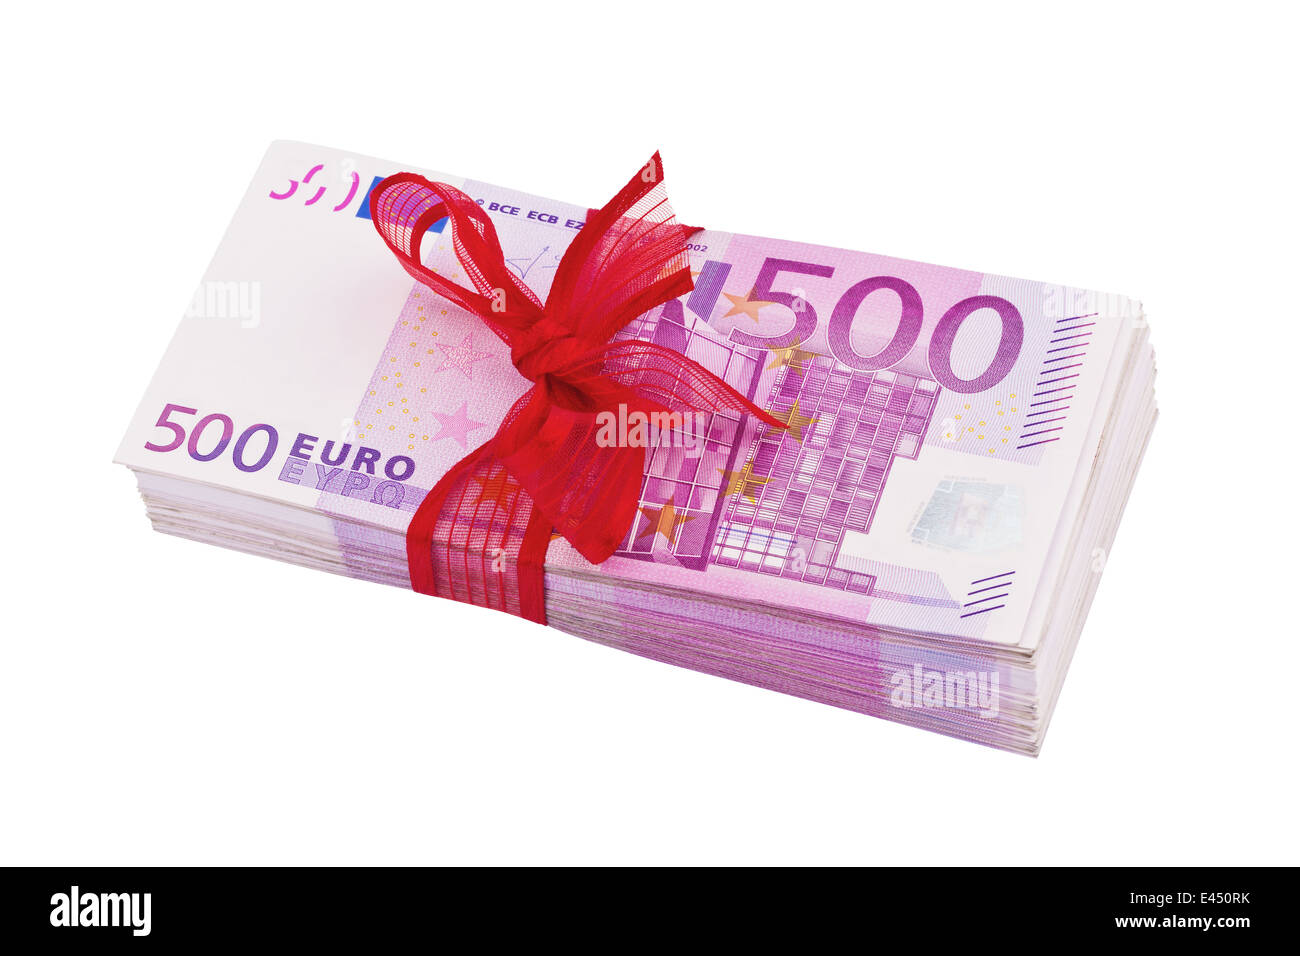 500 euros bill gift Banque de photographies et d'images à haute résolution  - Alamy